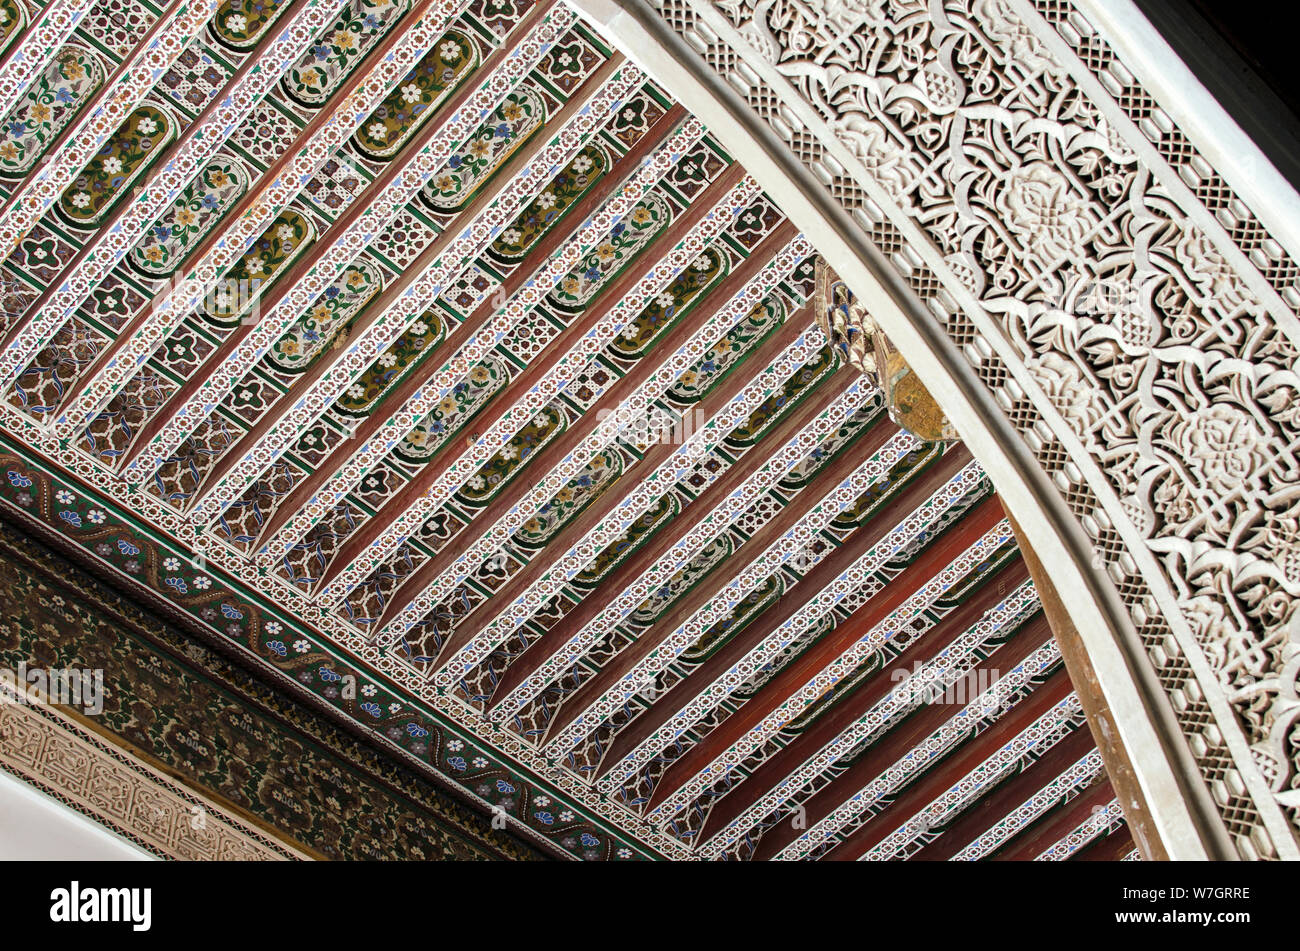 Détail de sculpture sur stuc, sur fond de plafond en bois peint à la main.  Bahia palace, Marrakesh Stock Photo - Alamy